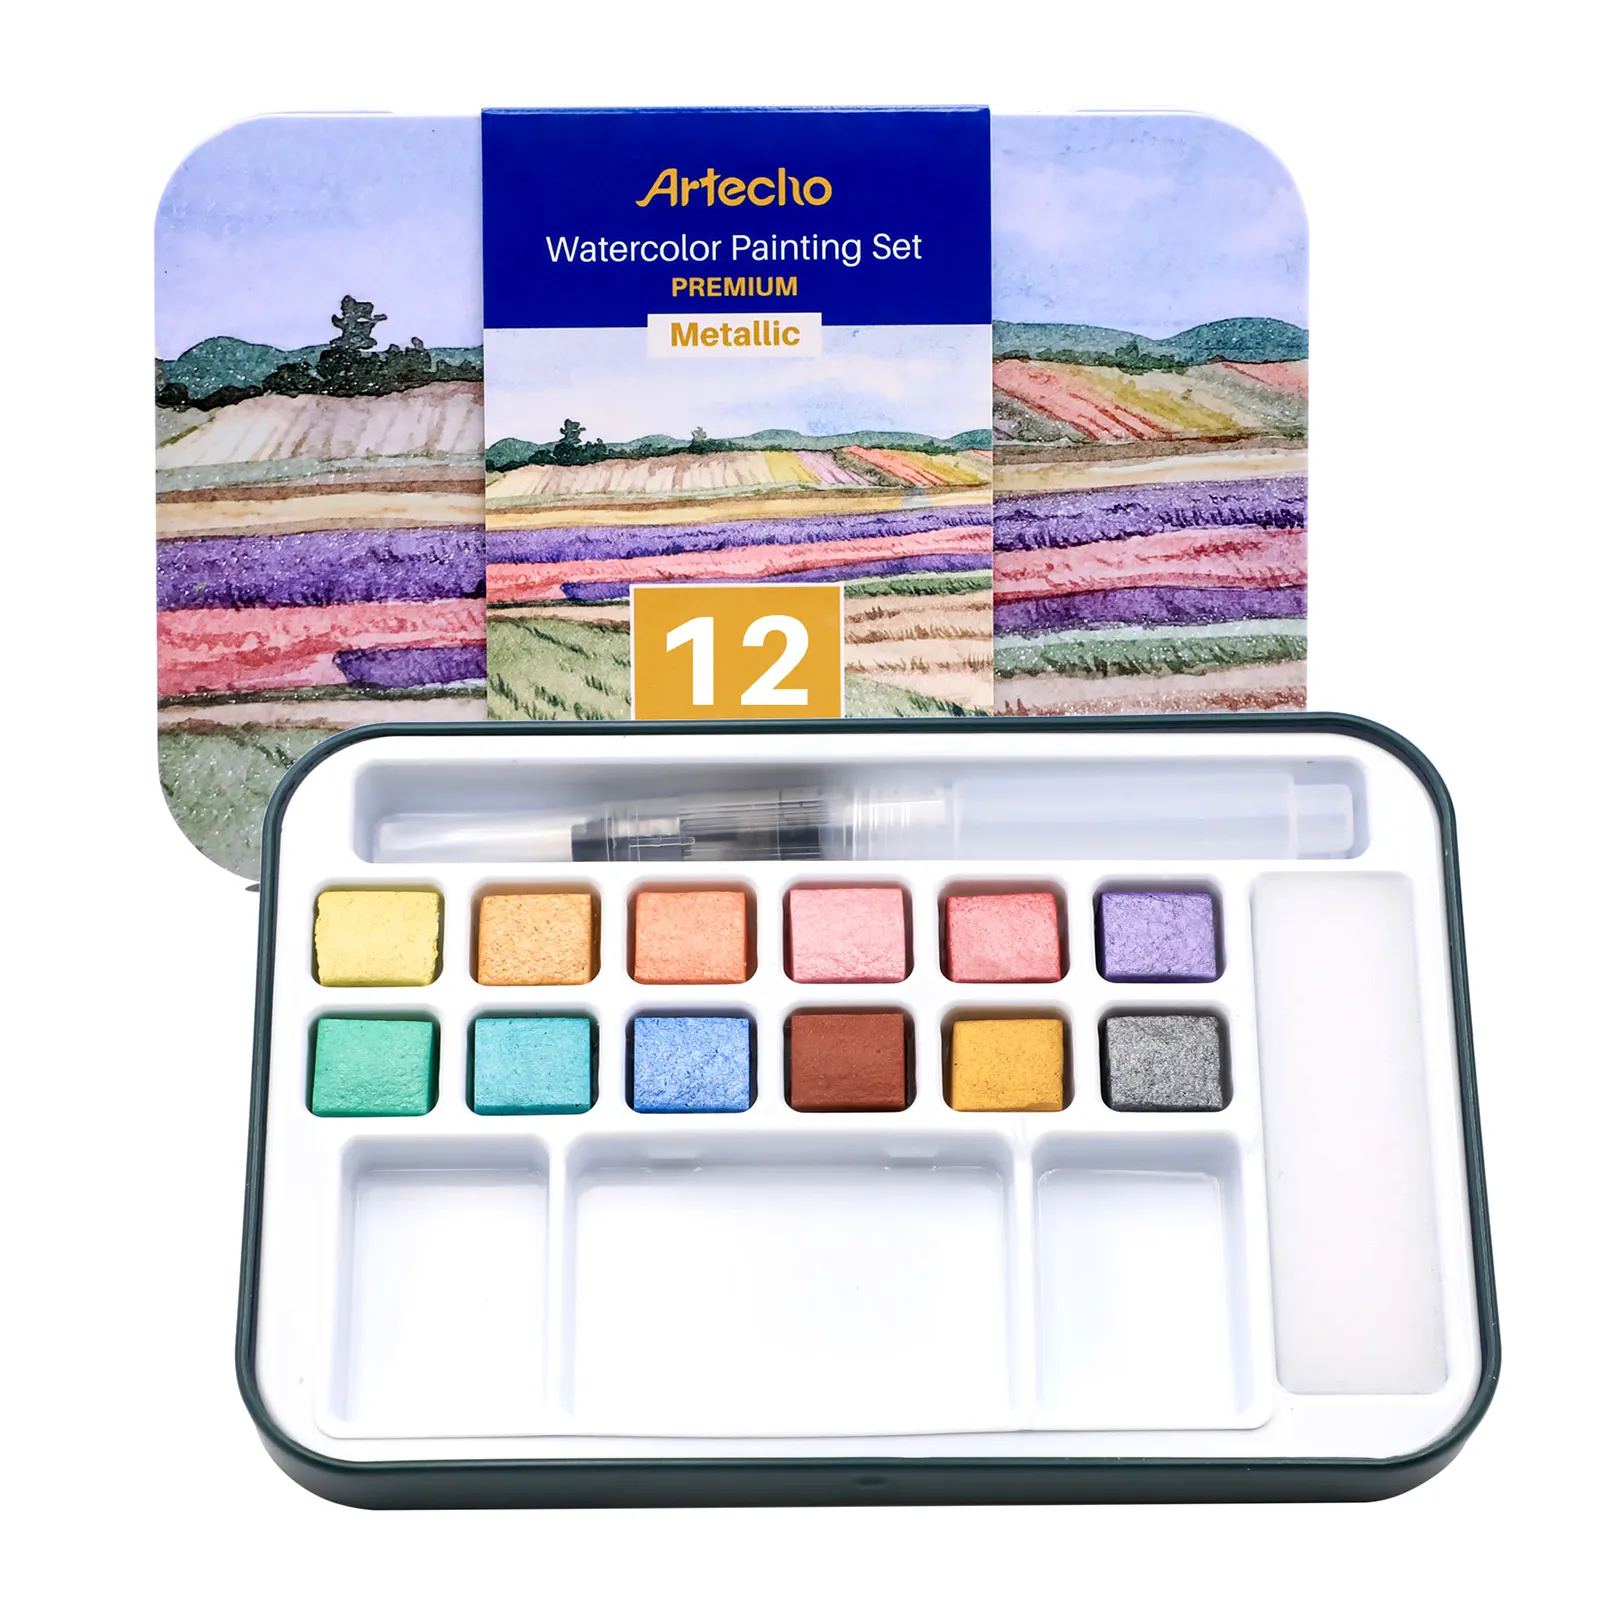 Artsu — ensemble de peinture aquarelle avec 12 couleurs métalliques, comprend un stylo brosse à eau, une éponge et un nuancier de couleur vierge